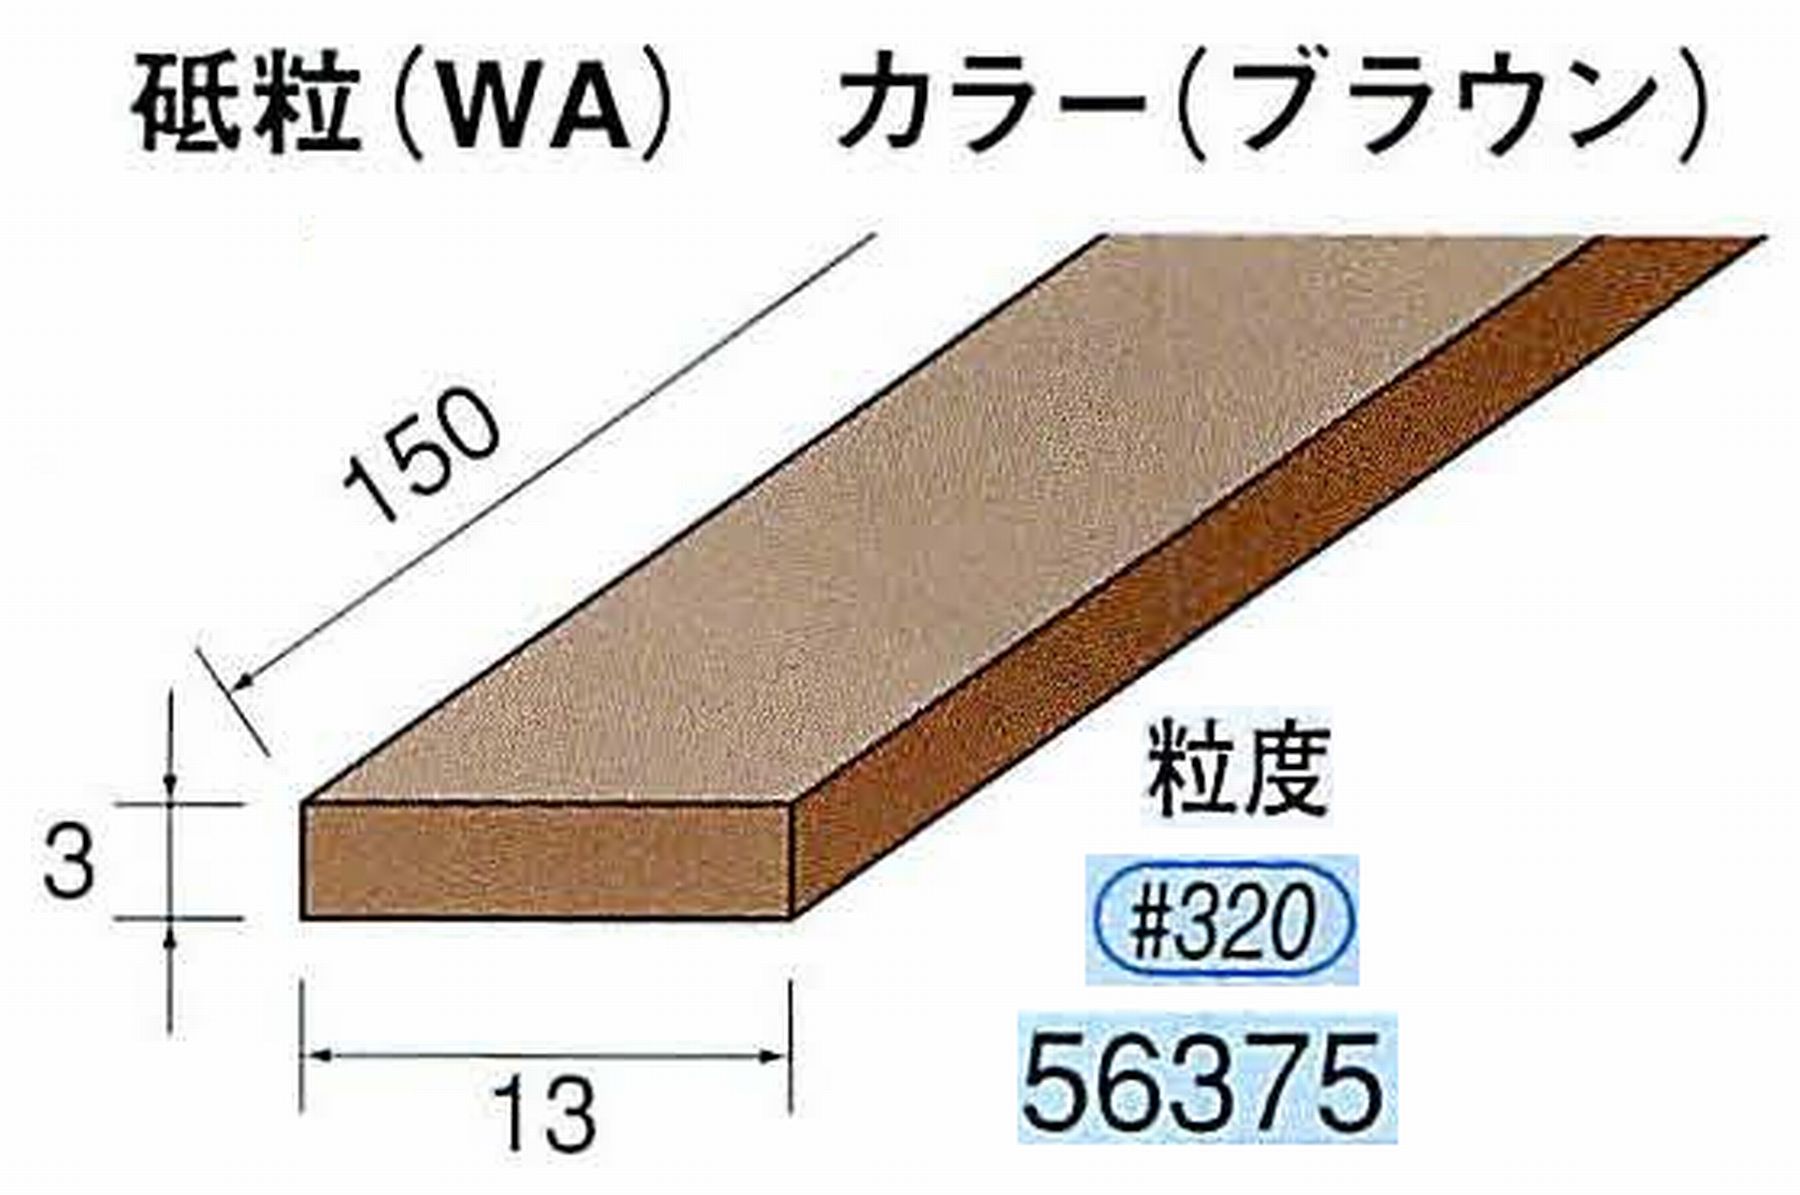 ナカニシ/NAKANISHI スティック砥石 ブラウン・フィニッシュシリーズ 砥粒(WA) 56375